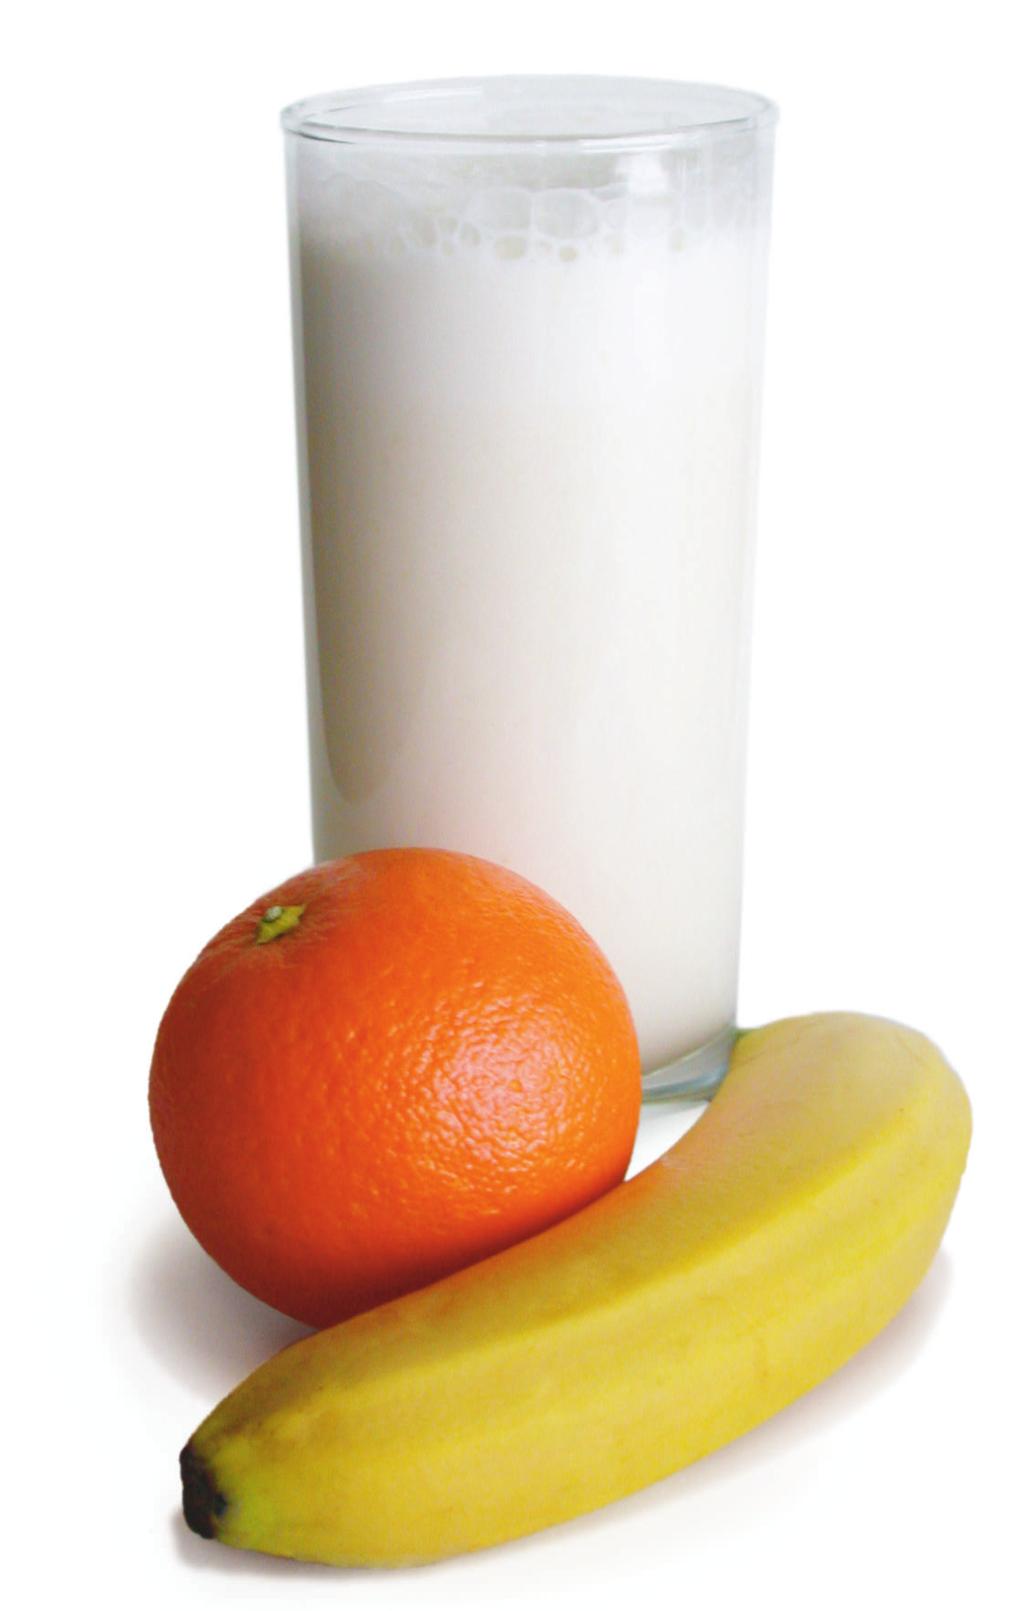 2 Orangen 1 Banane 1 Glas Milch 1 Eßlöffel Zucker Orangen auspressen; Orangen, Banane, Milch und Zucker im mixer verquirlen.